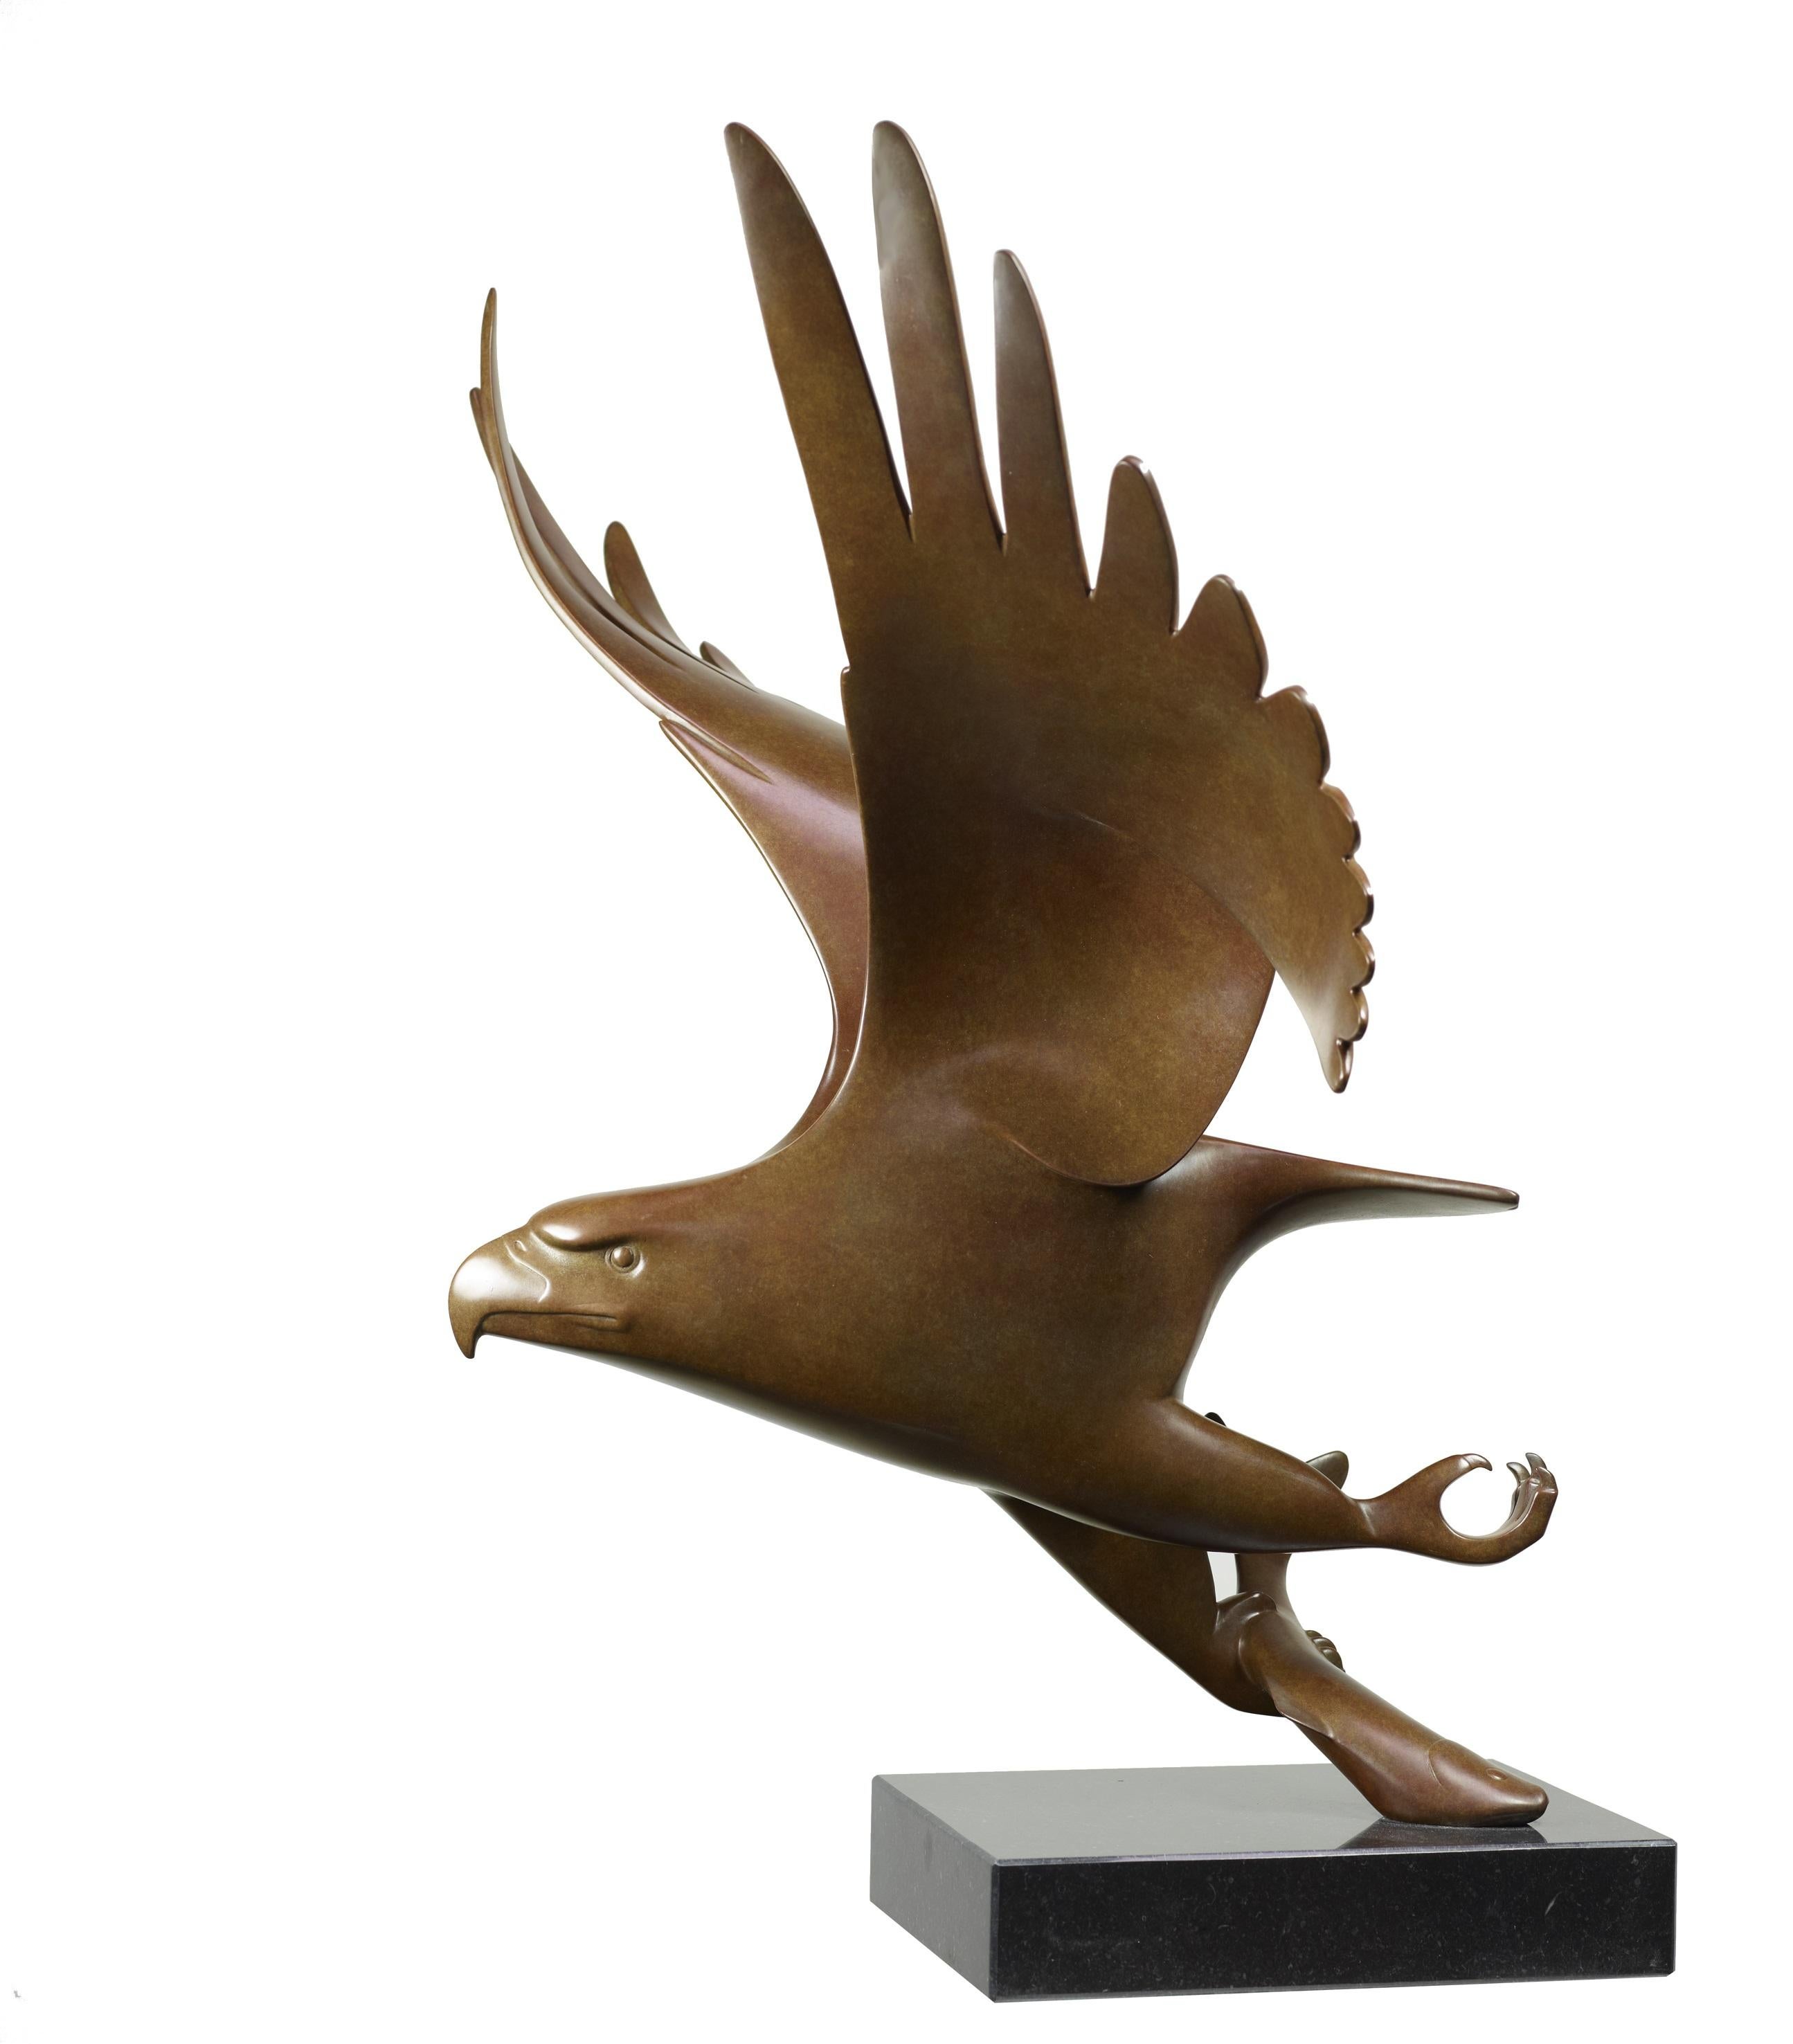 Evert den Hartog Figurative Sculpture - Roofvogel met Vis no. 1 Bird of Prey Bronze Sculpture Animal Contemporary